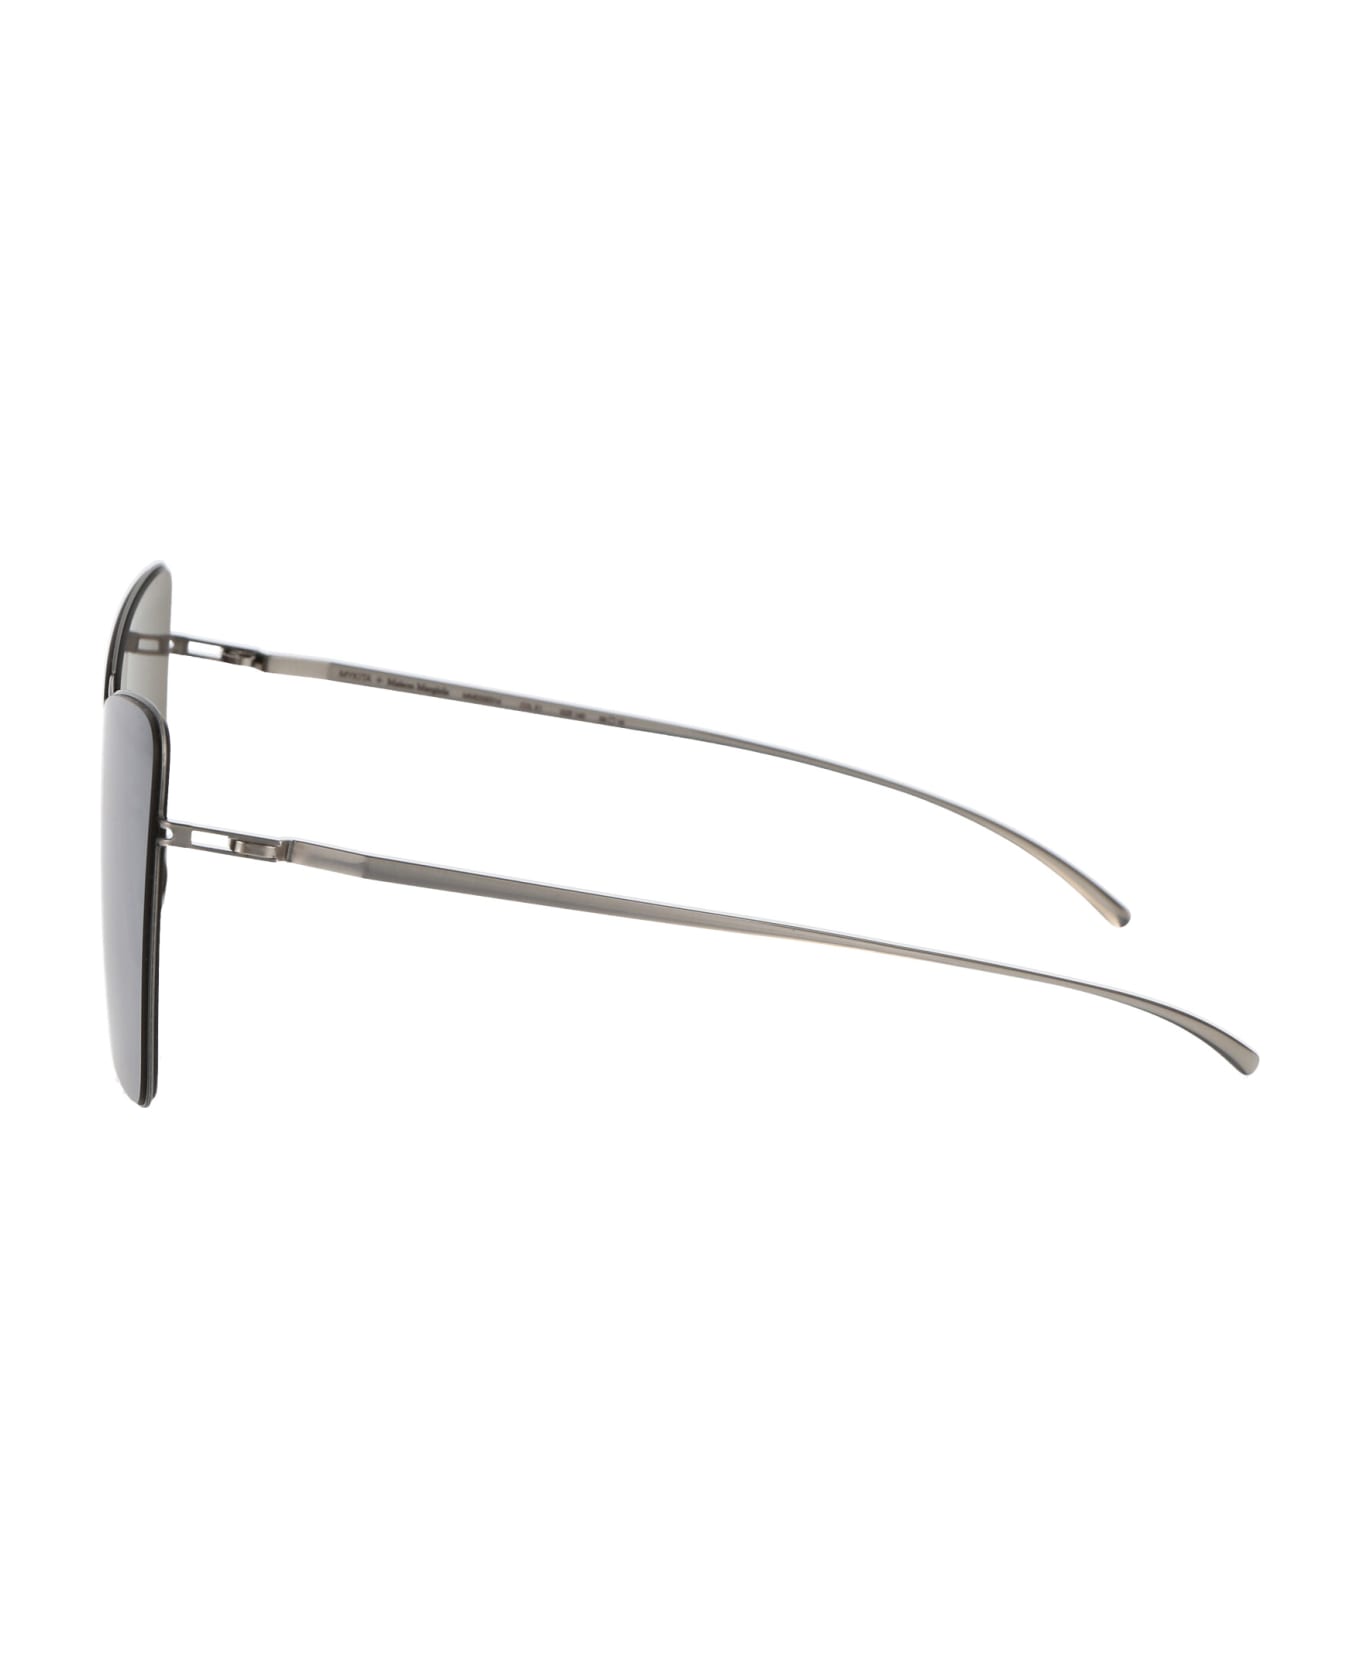 Mykita Mmesse014 Sunglasses - 187 E1 Silver Silver Flash